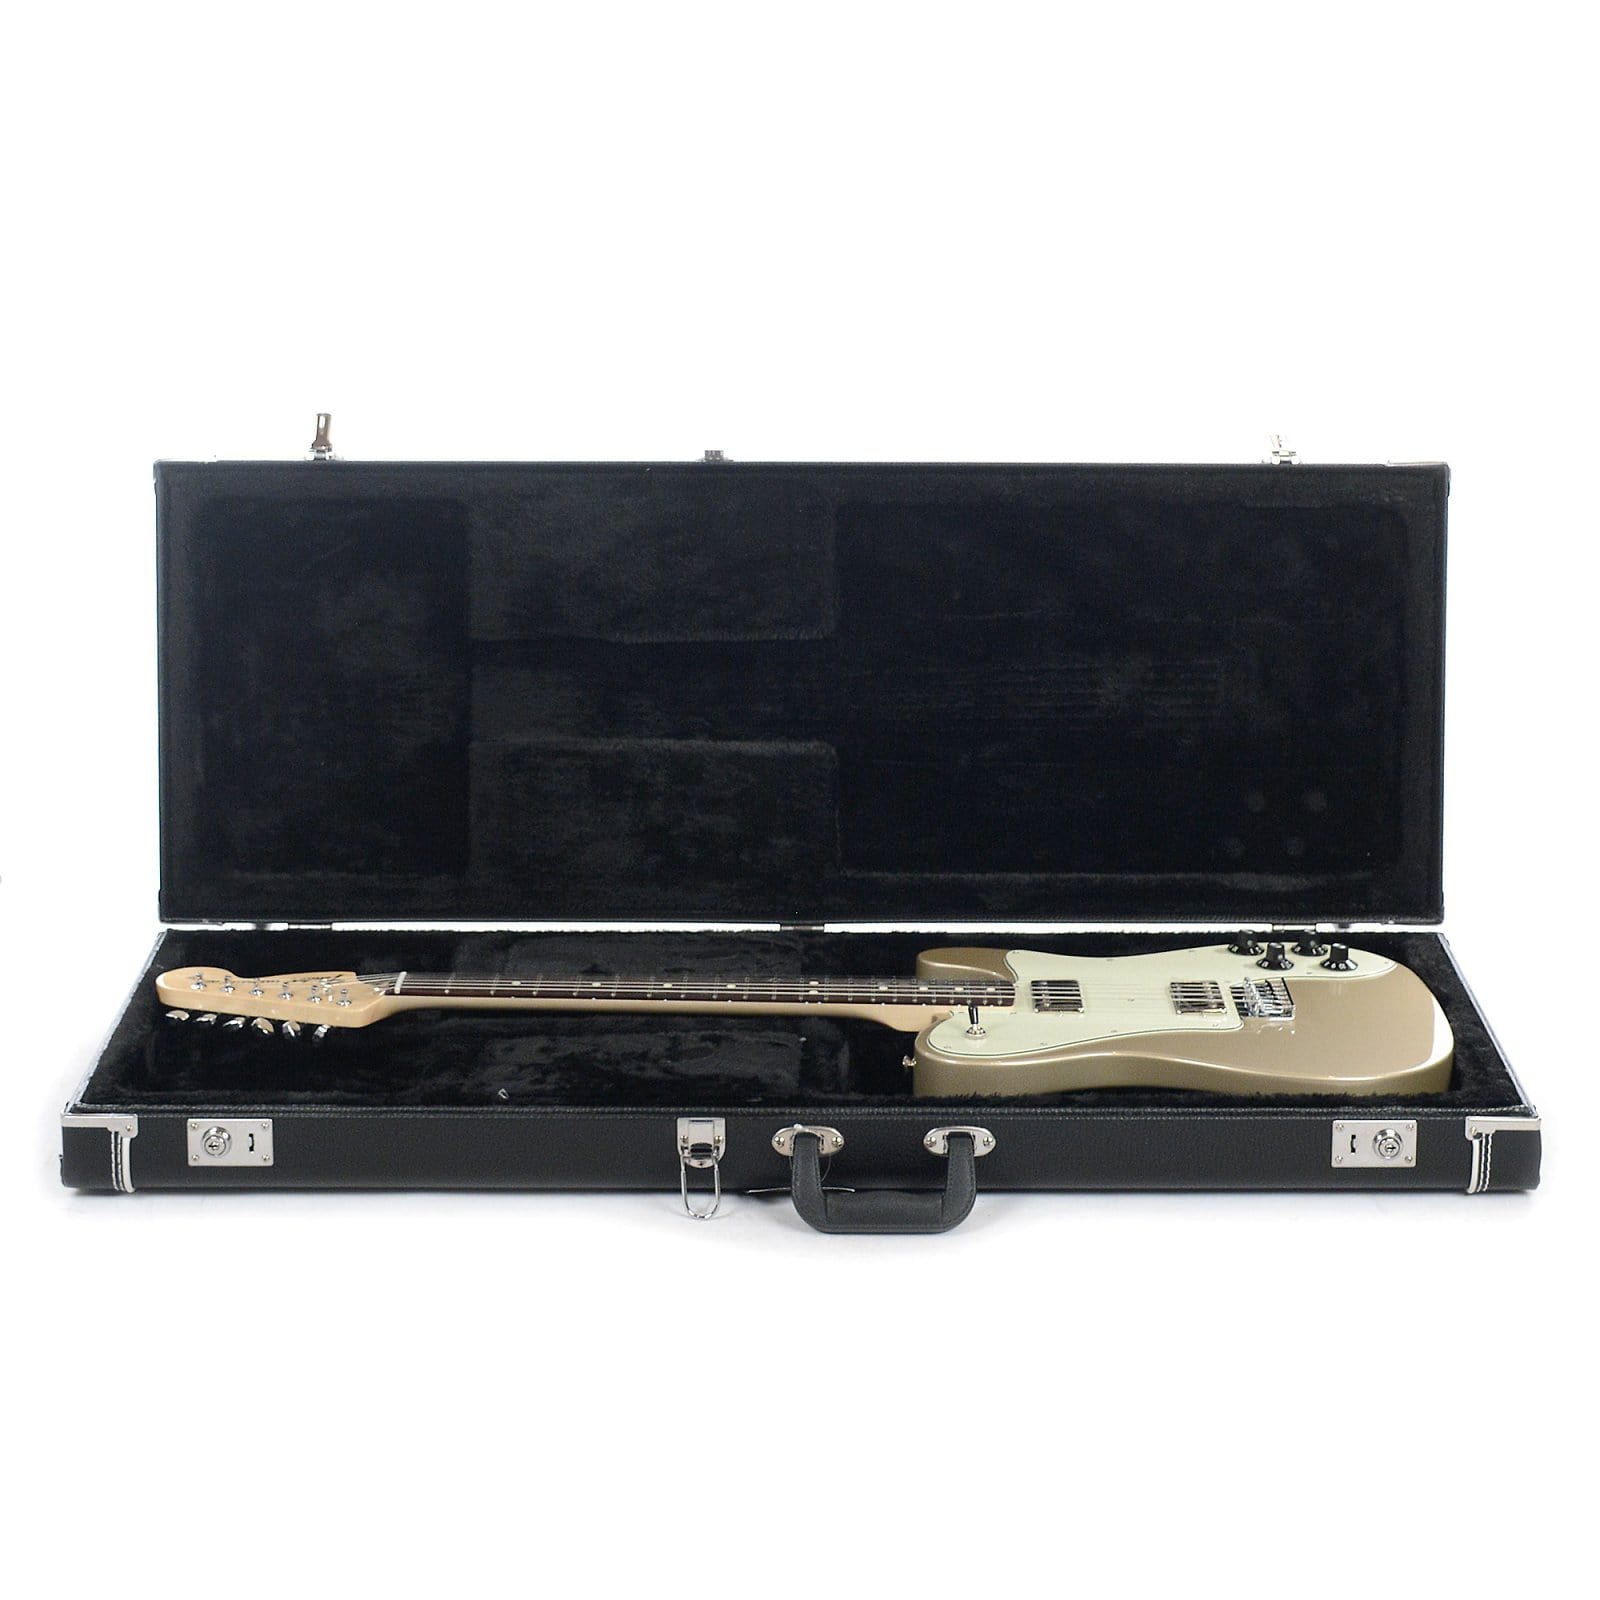 Fender Artist Chris Shiflett Telecaster Deluxe Shoreline Gold Electric Guitars / Solid Body